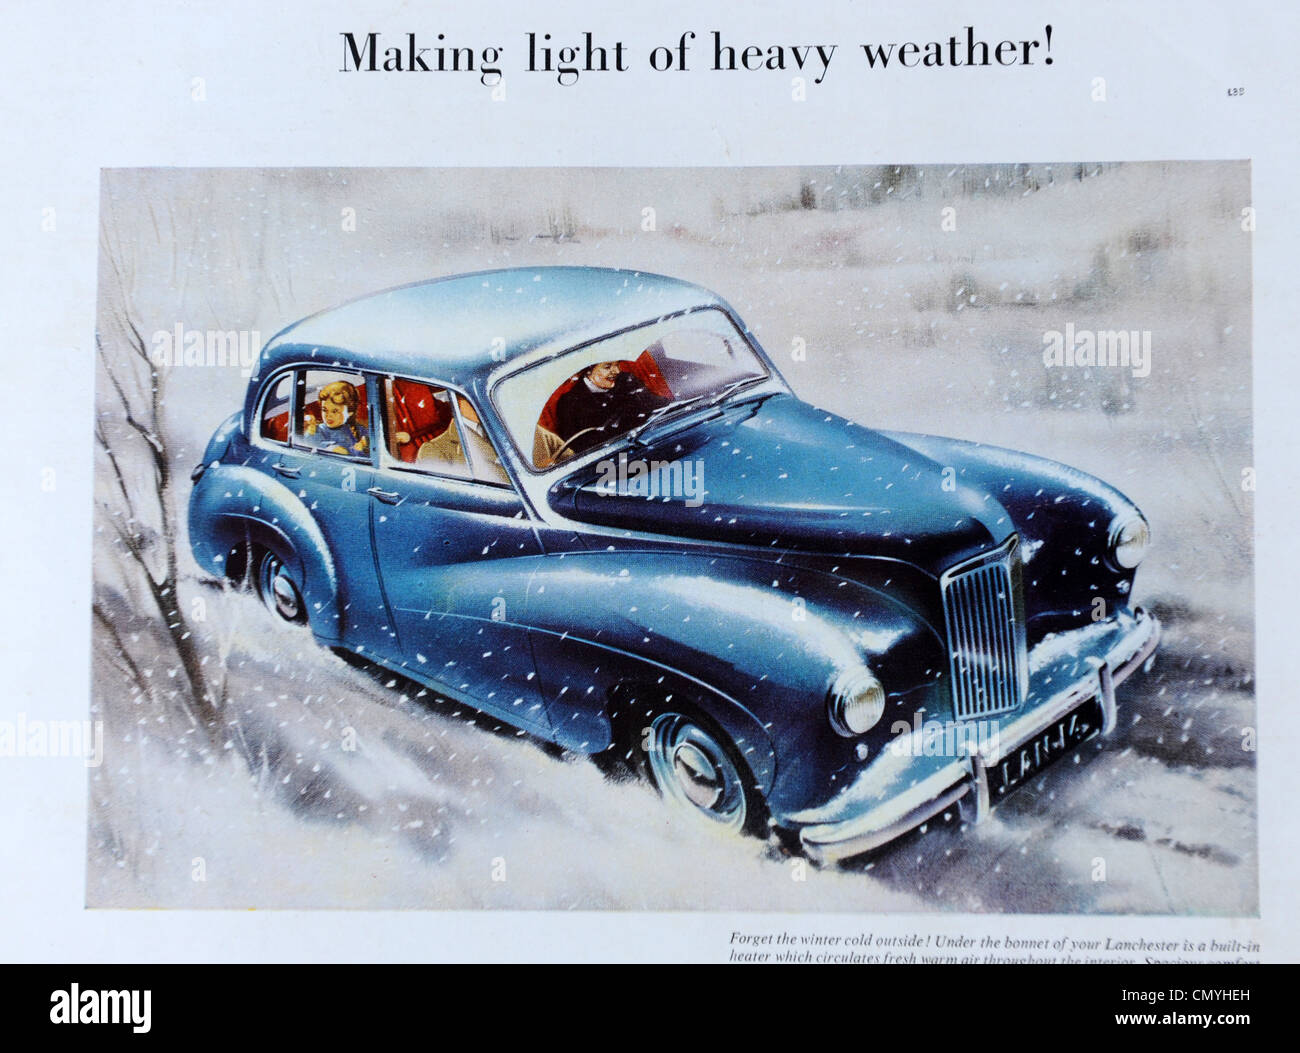 Annonce voiture Lanchester dans l'Illustrated London News 23/2/52 Banque D'Images